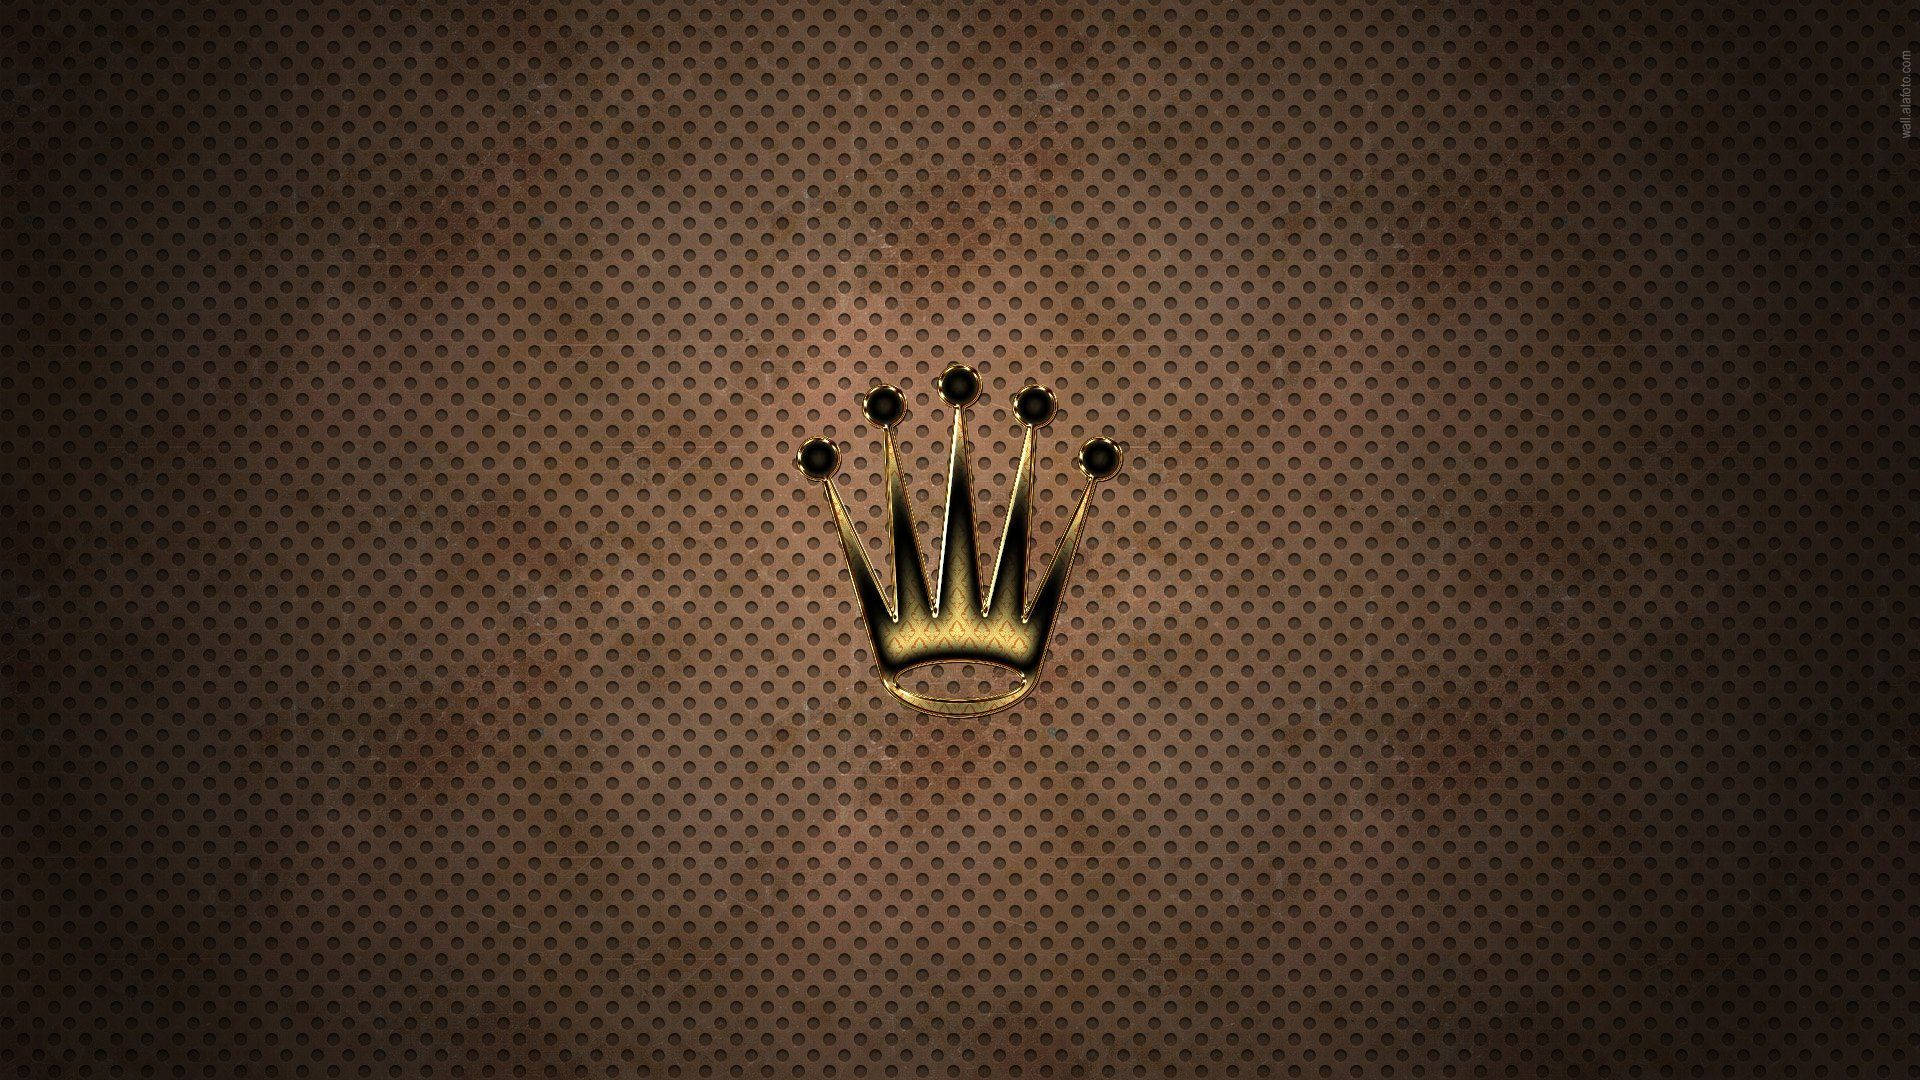 Metallisktbronsfärgat Rolex-logotyp. Wallpaper